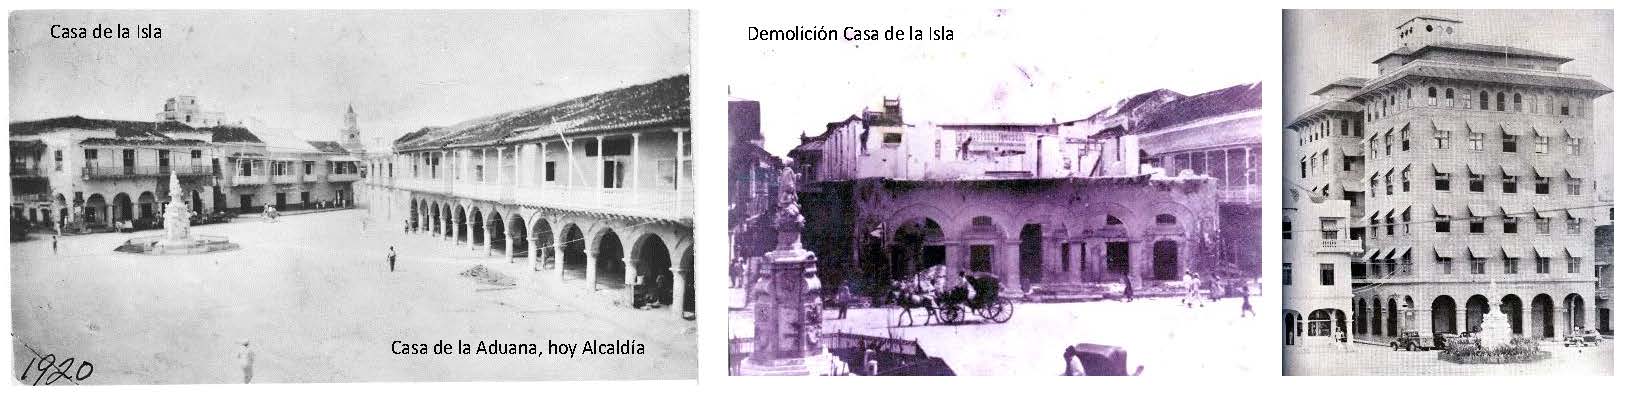 Image_03_Plaza de la Aduana 1920